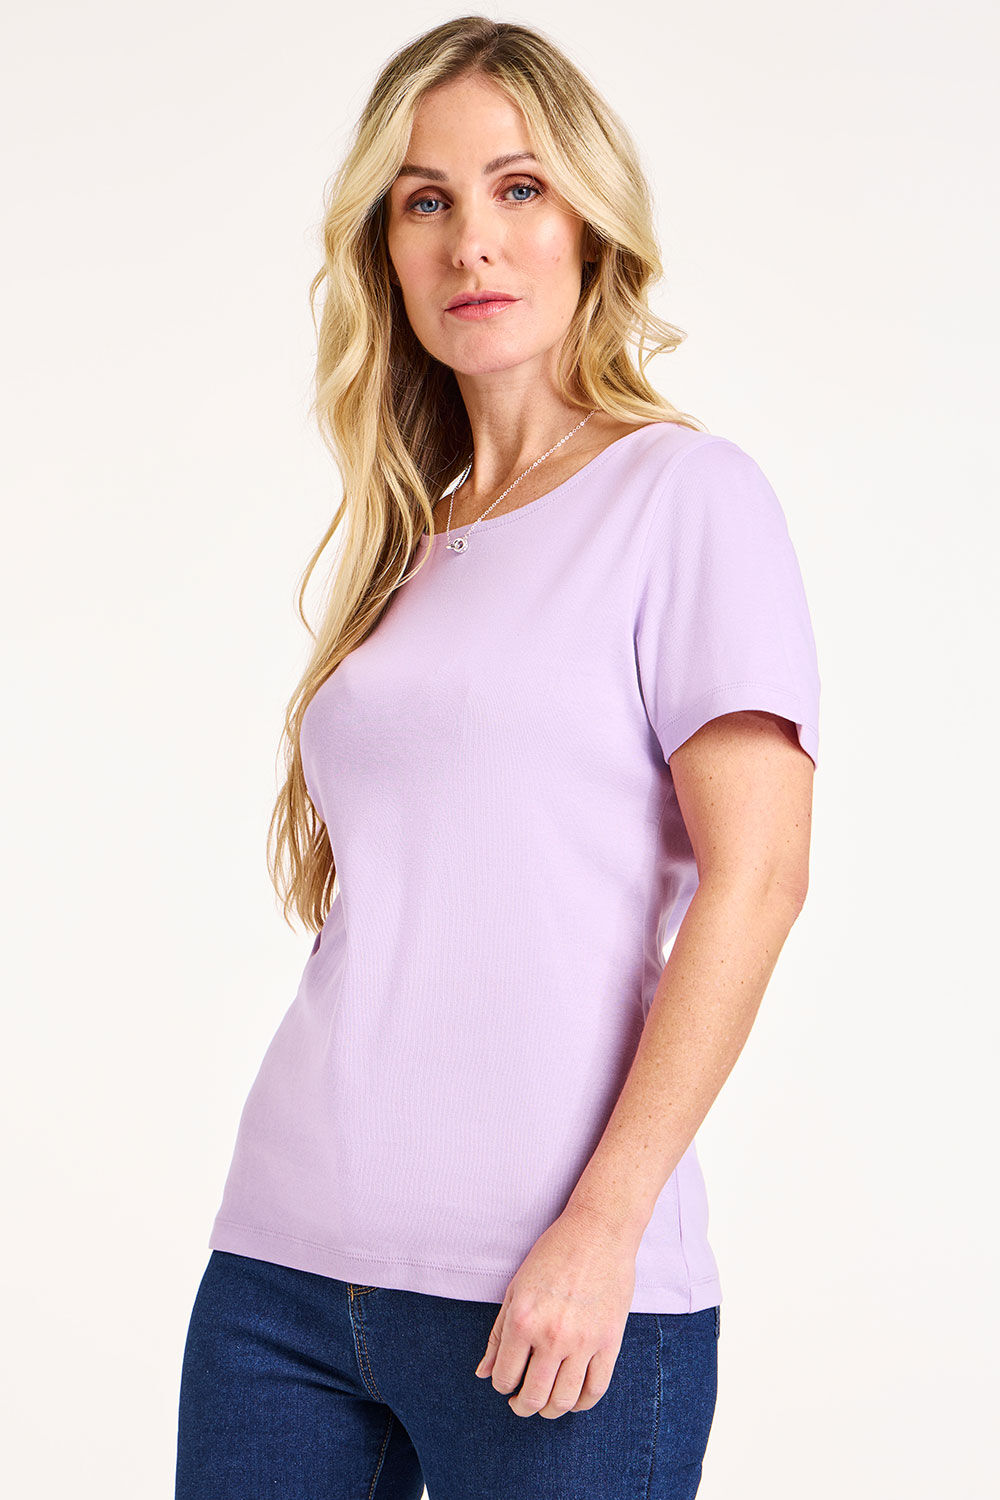 Bonmarche Women’s Light Purple Cotton Classic Short Sleeve Plain Scoop Neck T-Shirt, Size: 16